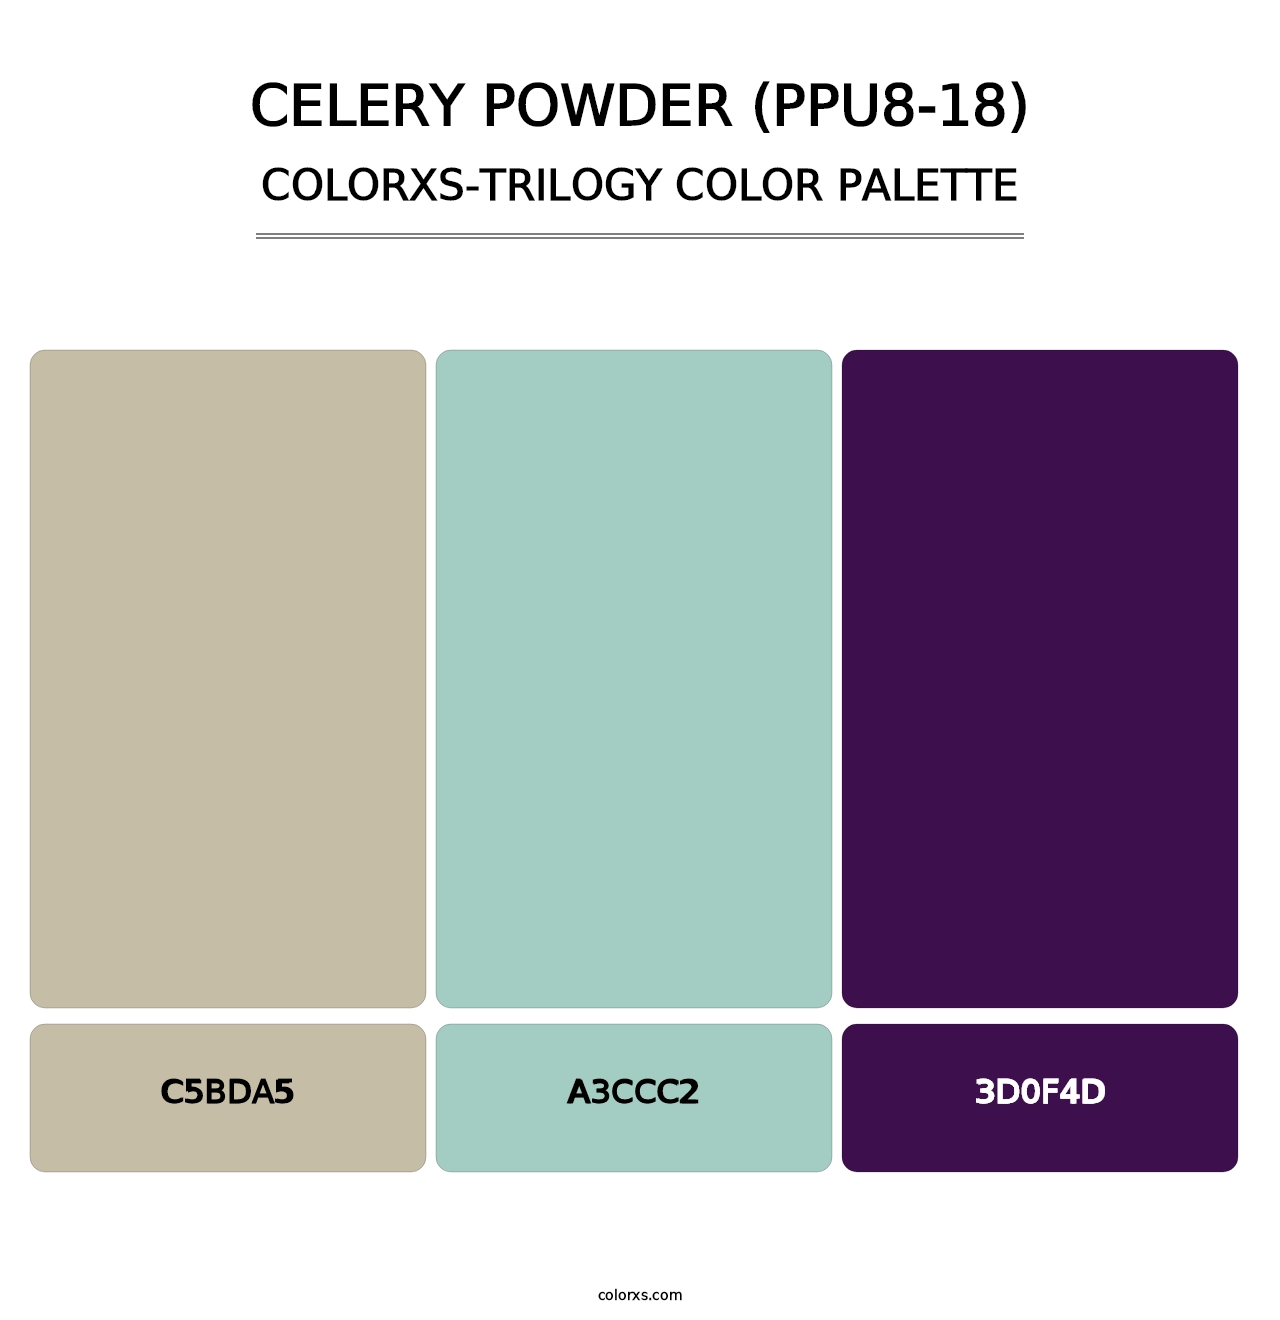 Celery Powder (PPU8-18) - Colorxs Trilogy Palette